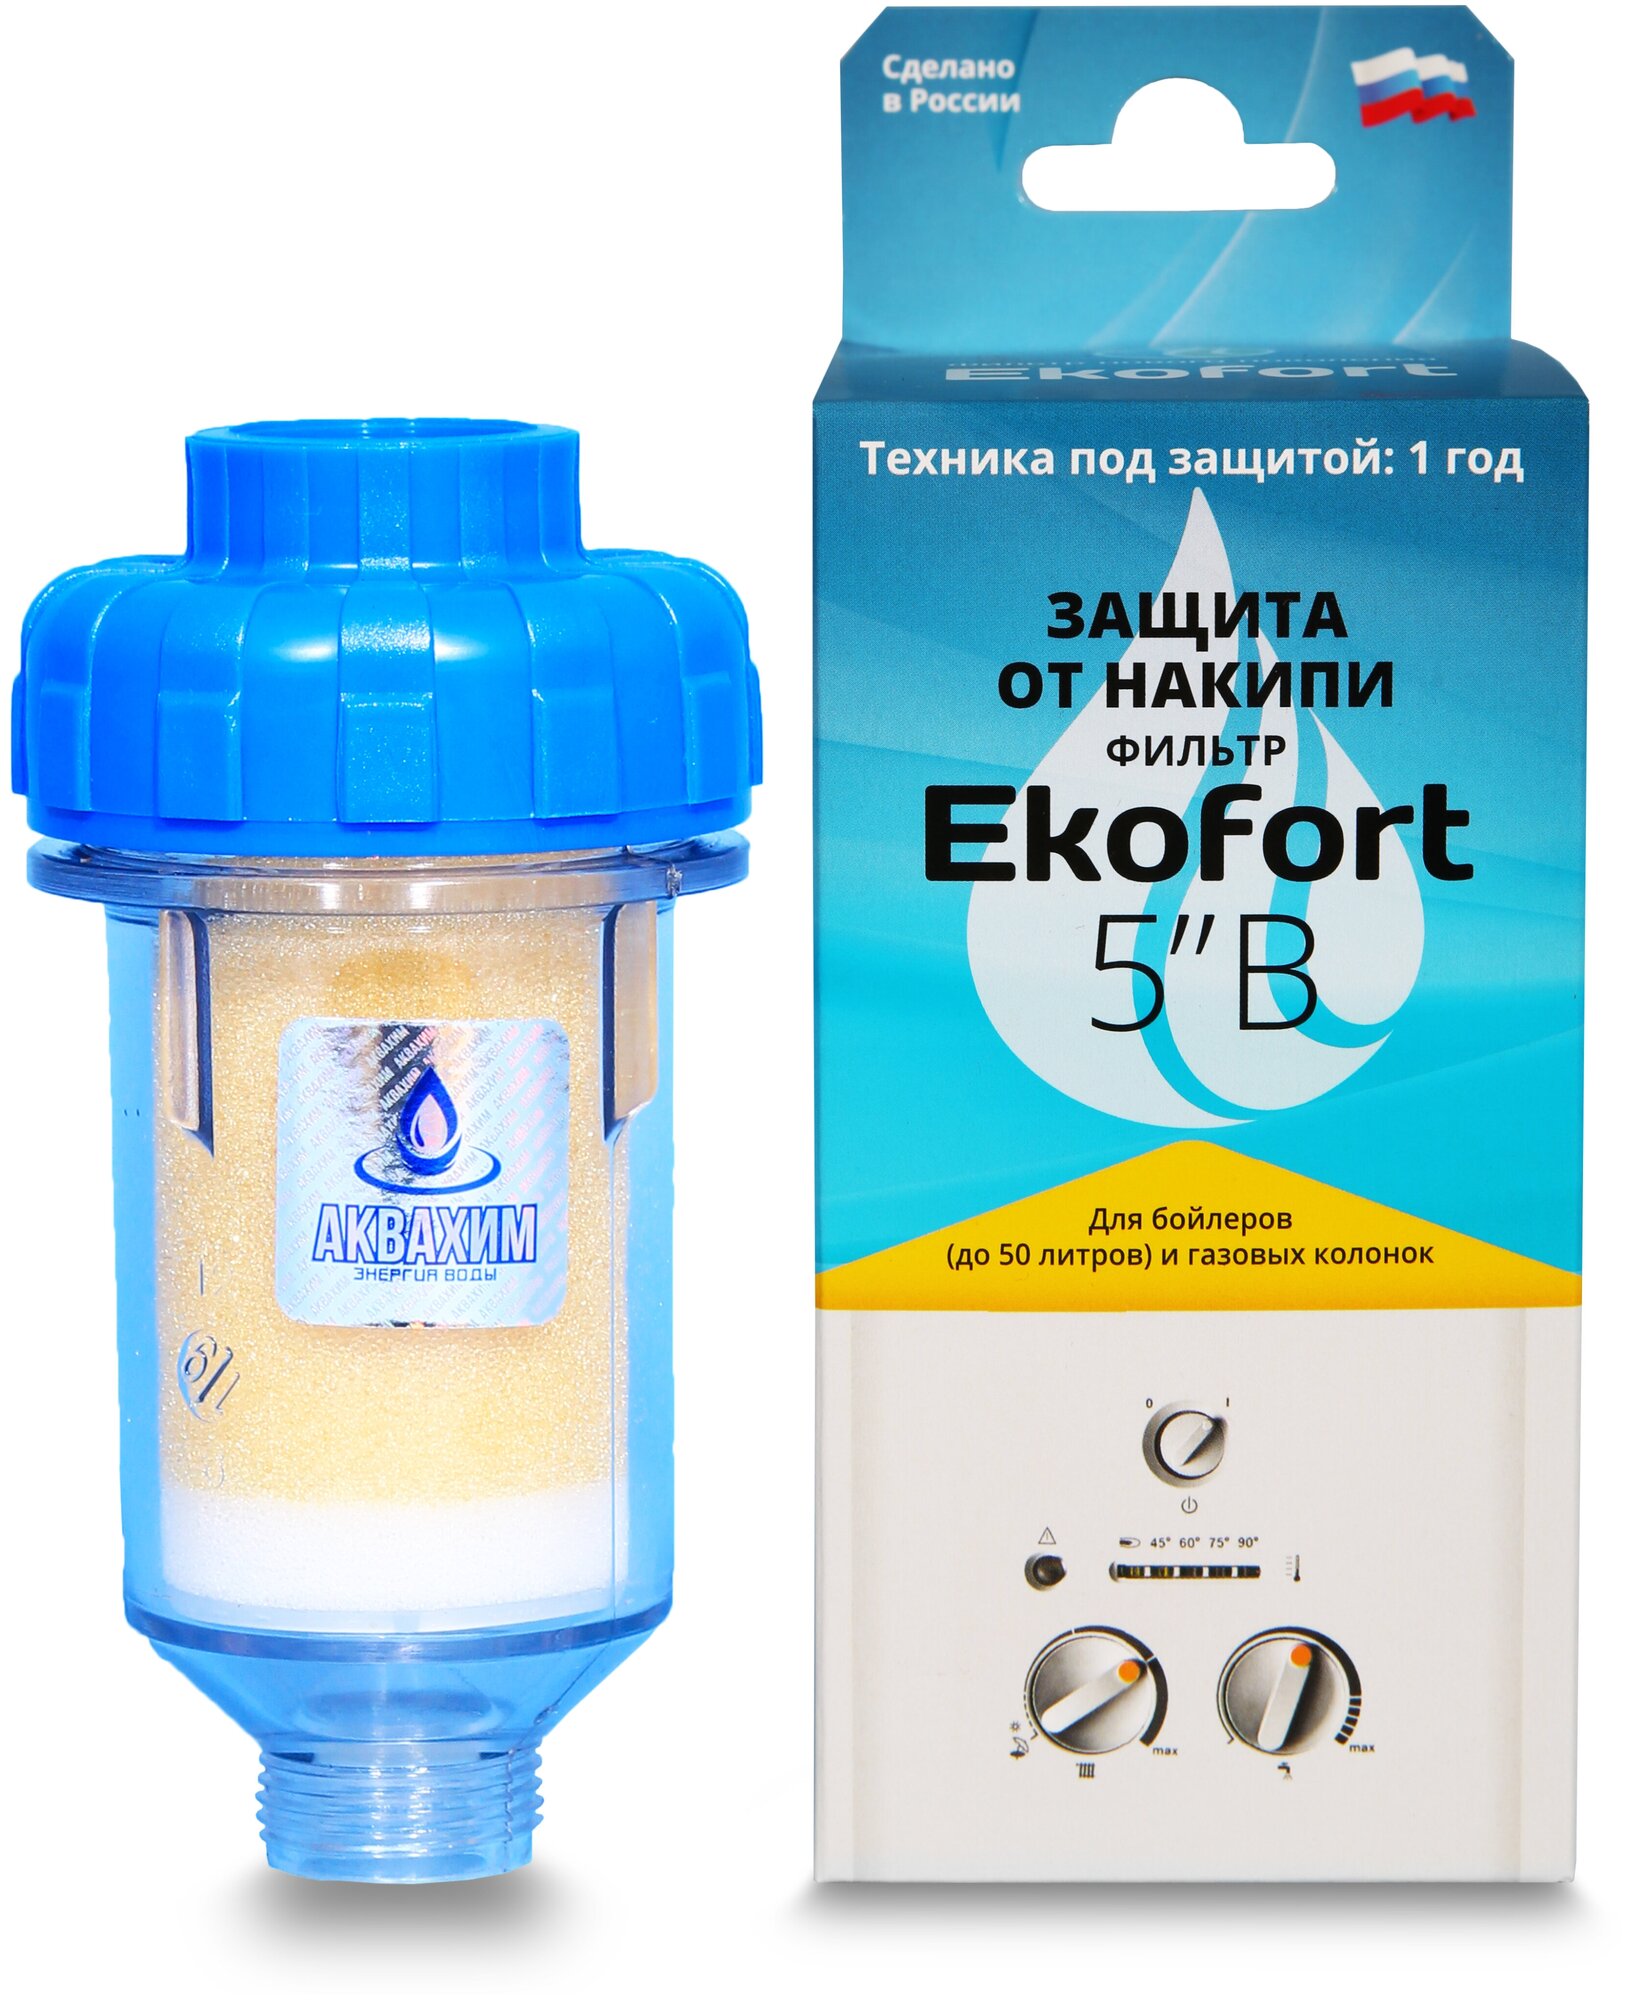 Фильтр Ekofort 5" B (3/4") для защиты от накипи газовых и электрических водонагревателей, бойлеров